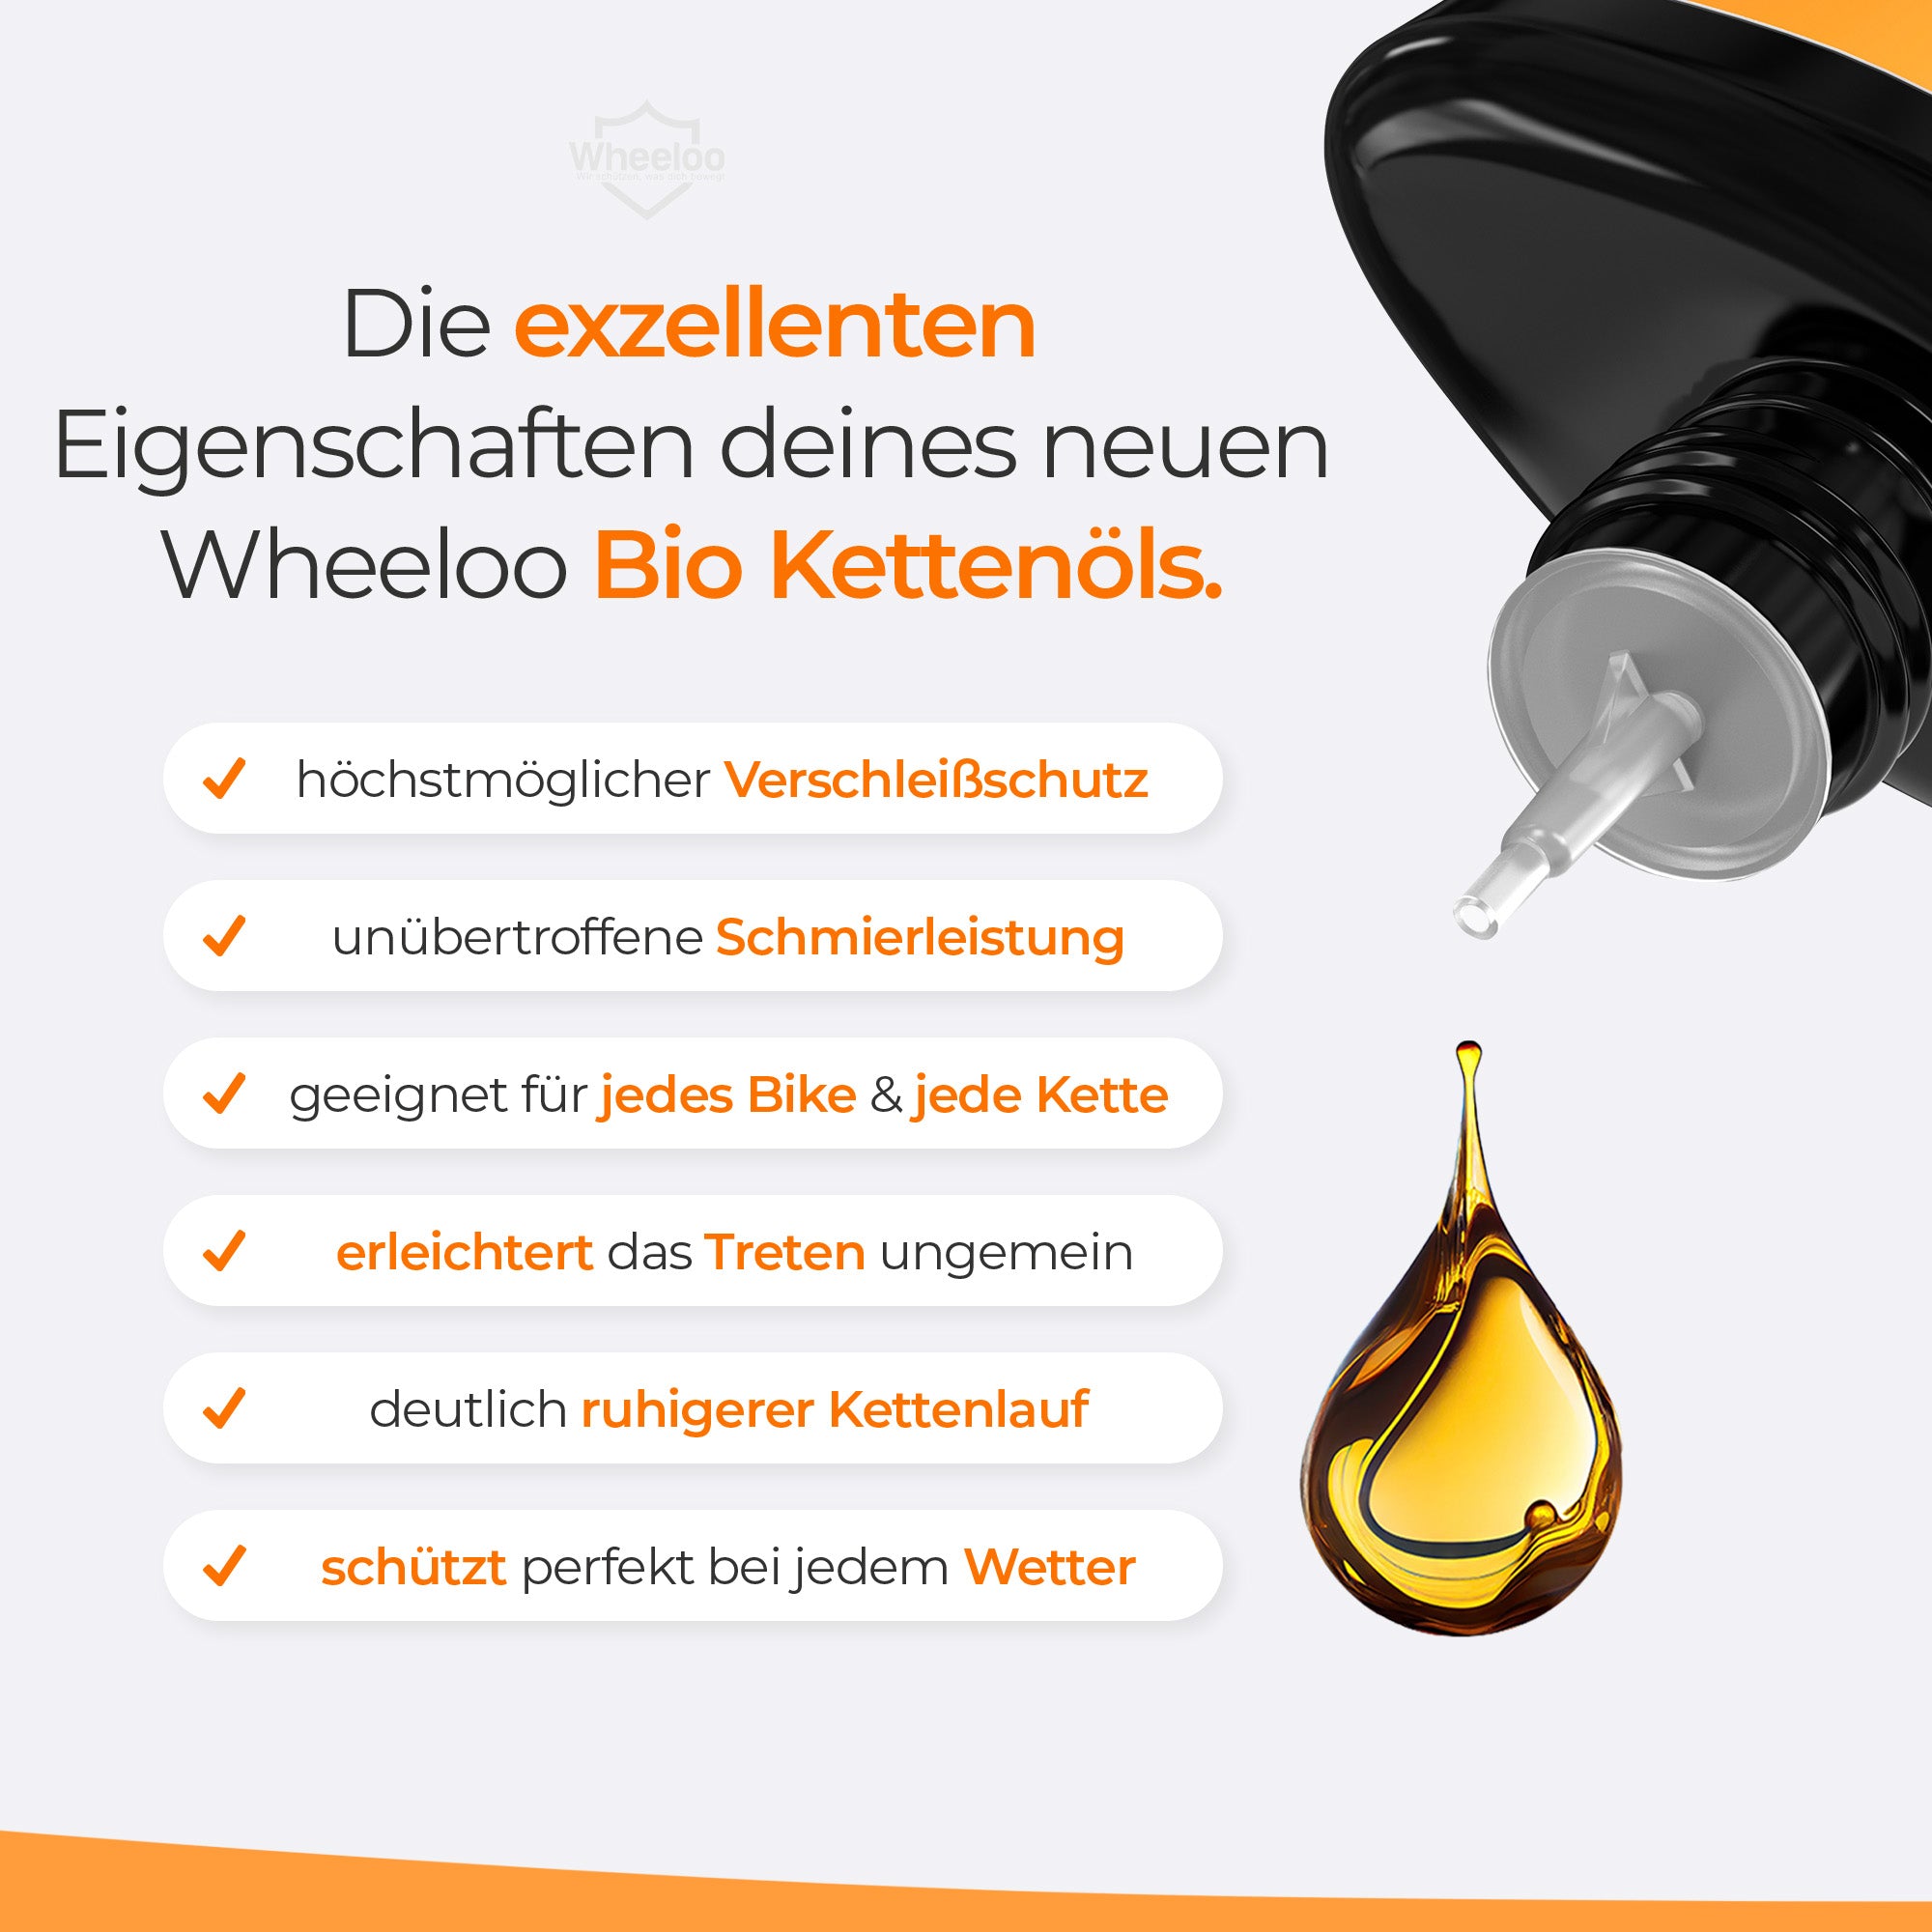 antidot. kettenöl mini / fahrrad kettenöl 7 ml – BE-SCooTER